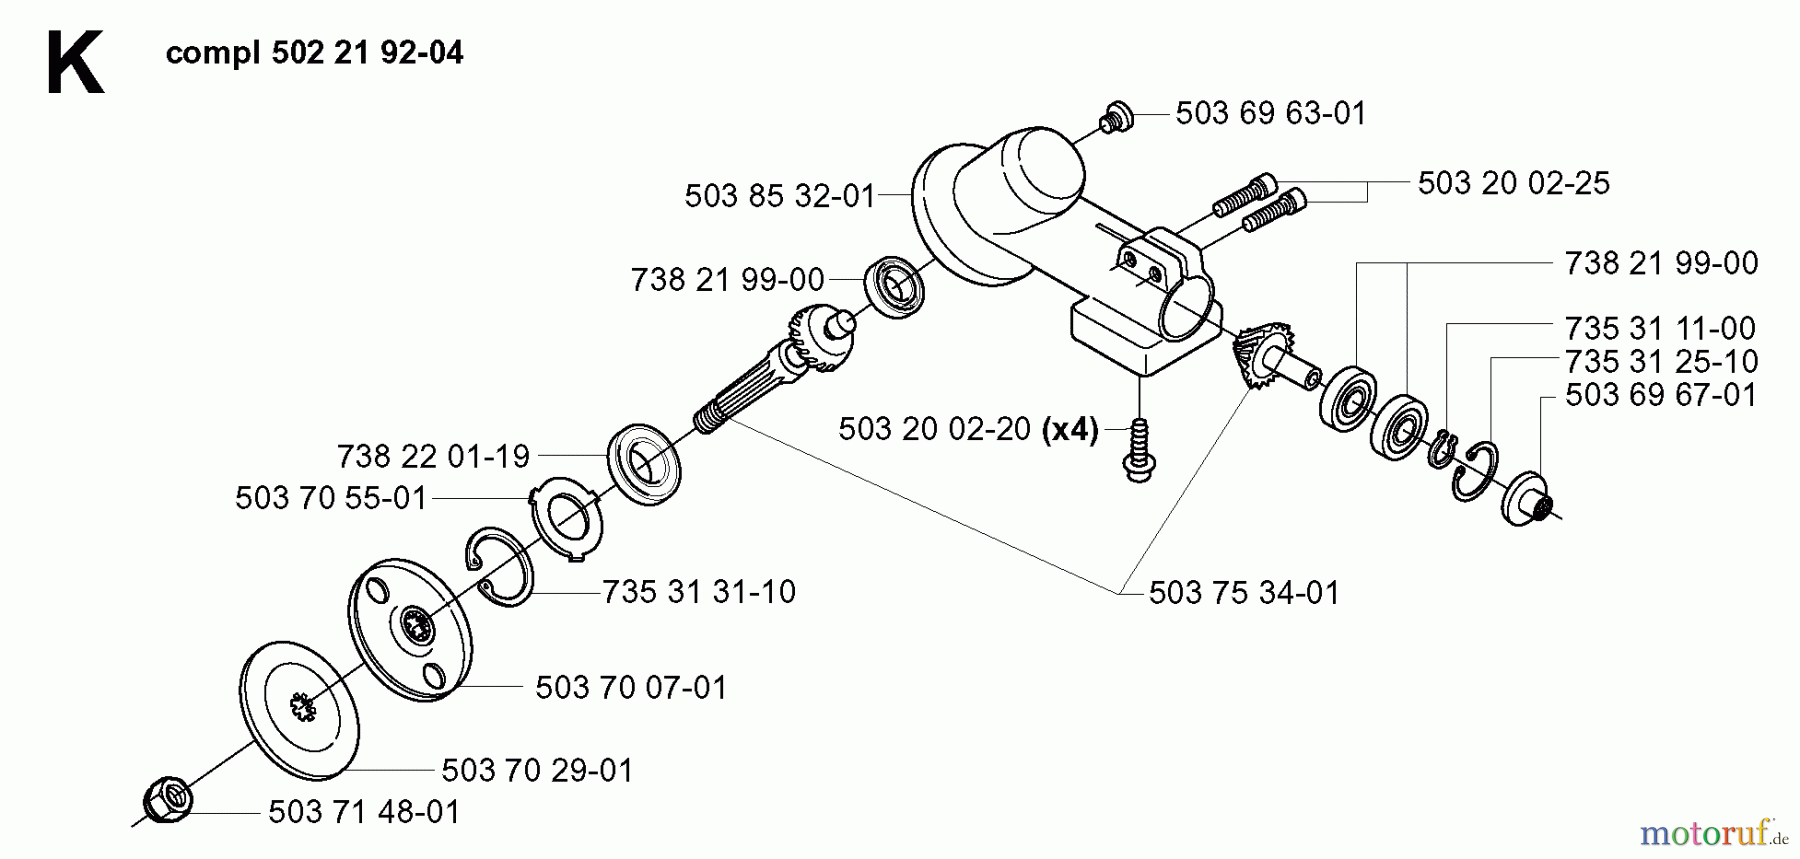  Jonsered Motorsensen, Trimmer GR2026 - Jonsered String/Brush Trimmer (2000-10) BEVEL GEAR